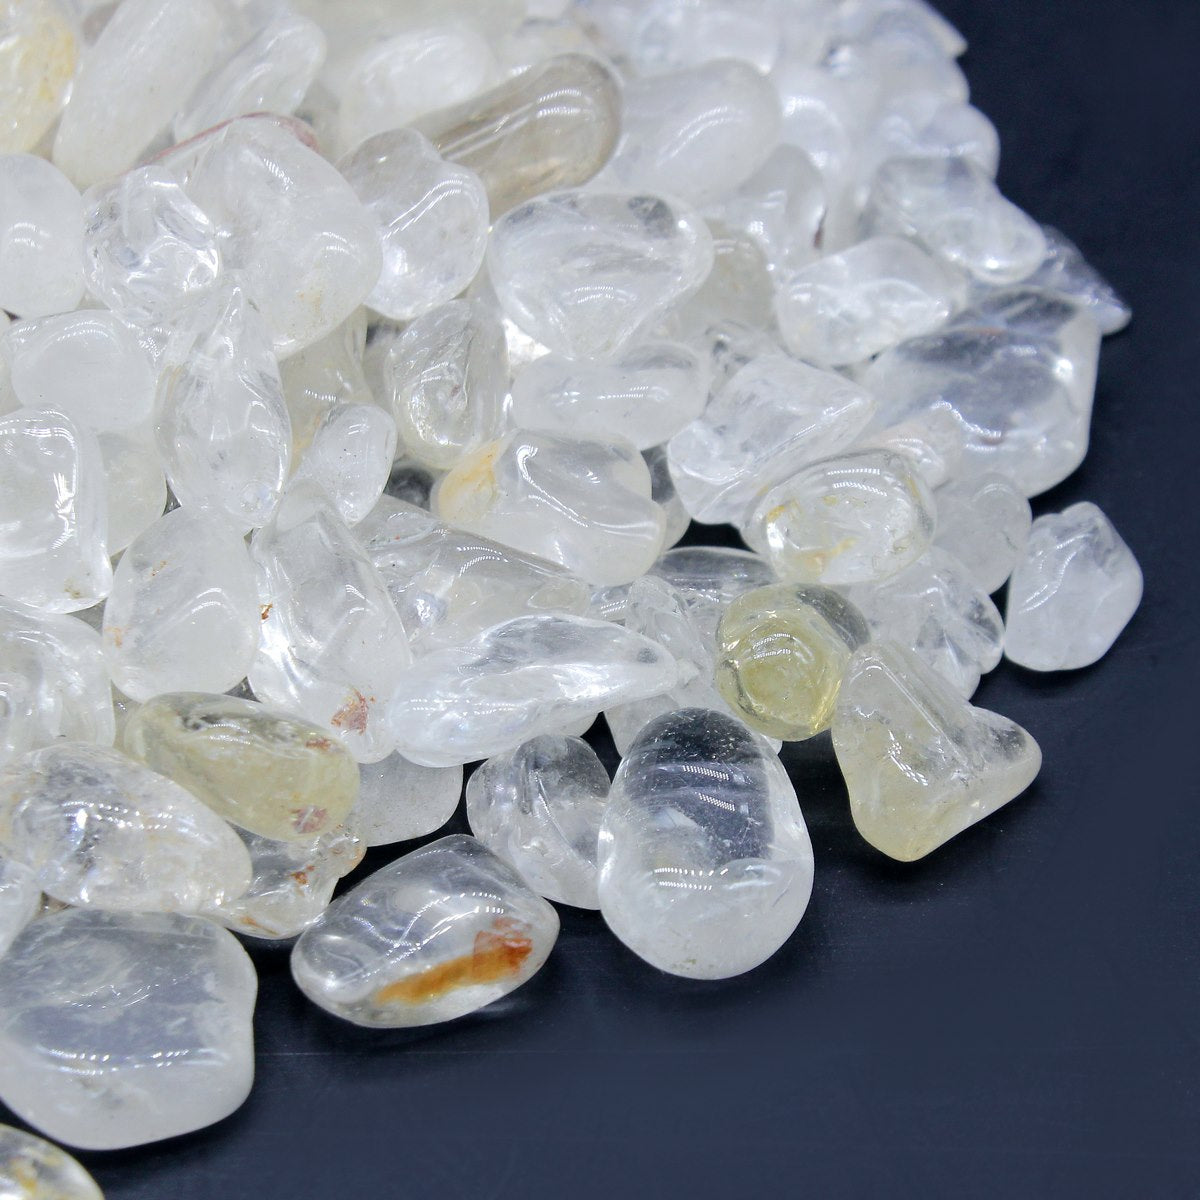 jags-mumbai Stone Resin Stone White Crystal 250gm